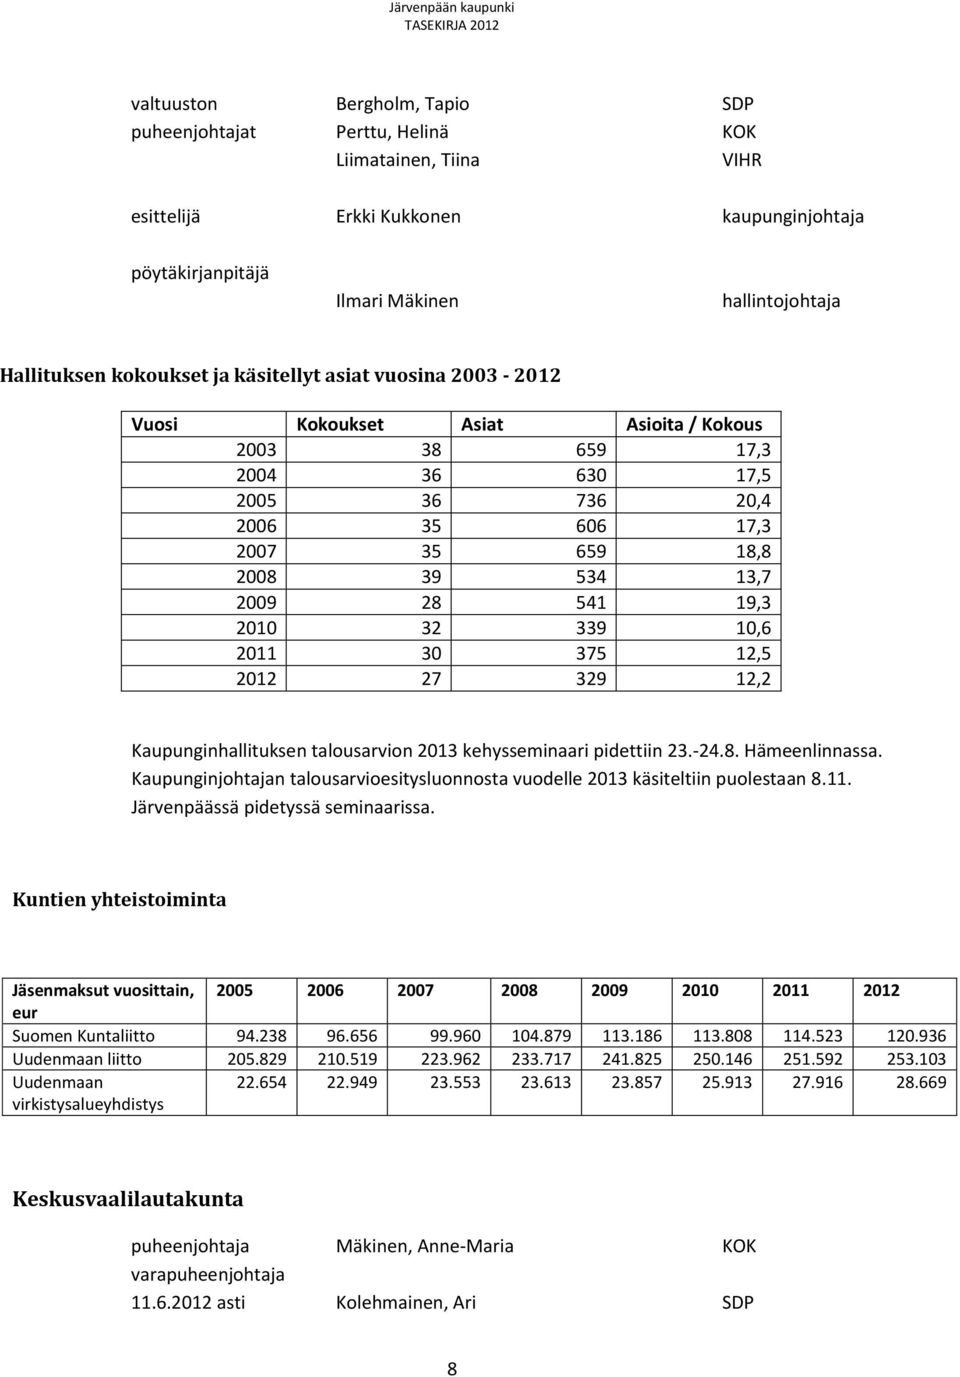 541 19,3 2010 32 339 10,6 2011 30 375 12,5 2012 27 329 12,2 Kaupunginhallituksen talousarvion 2013 kehysseminaari pidettiin 23.-24.8. Hämeenlinnassa.